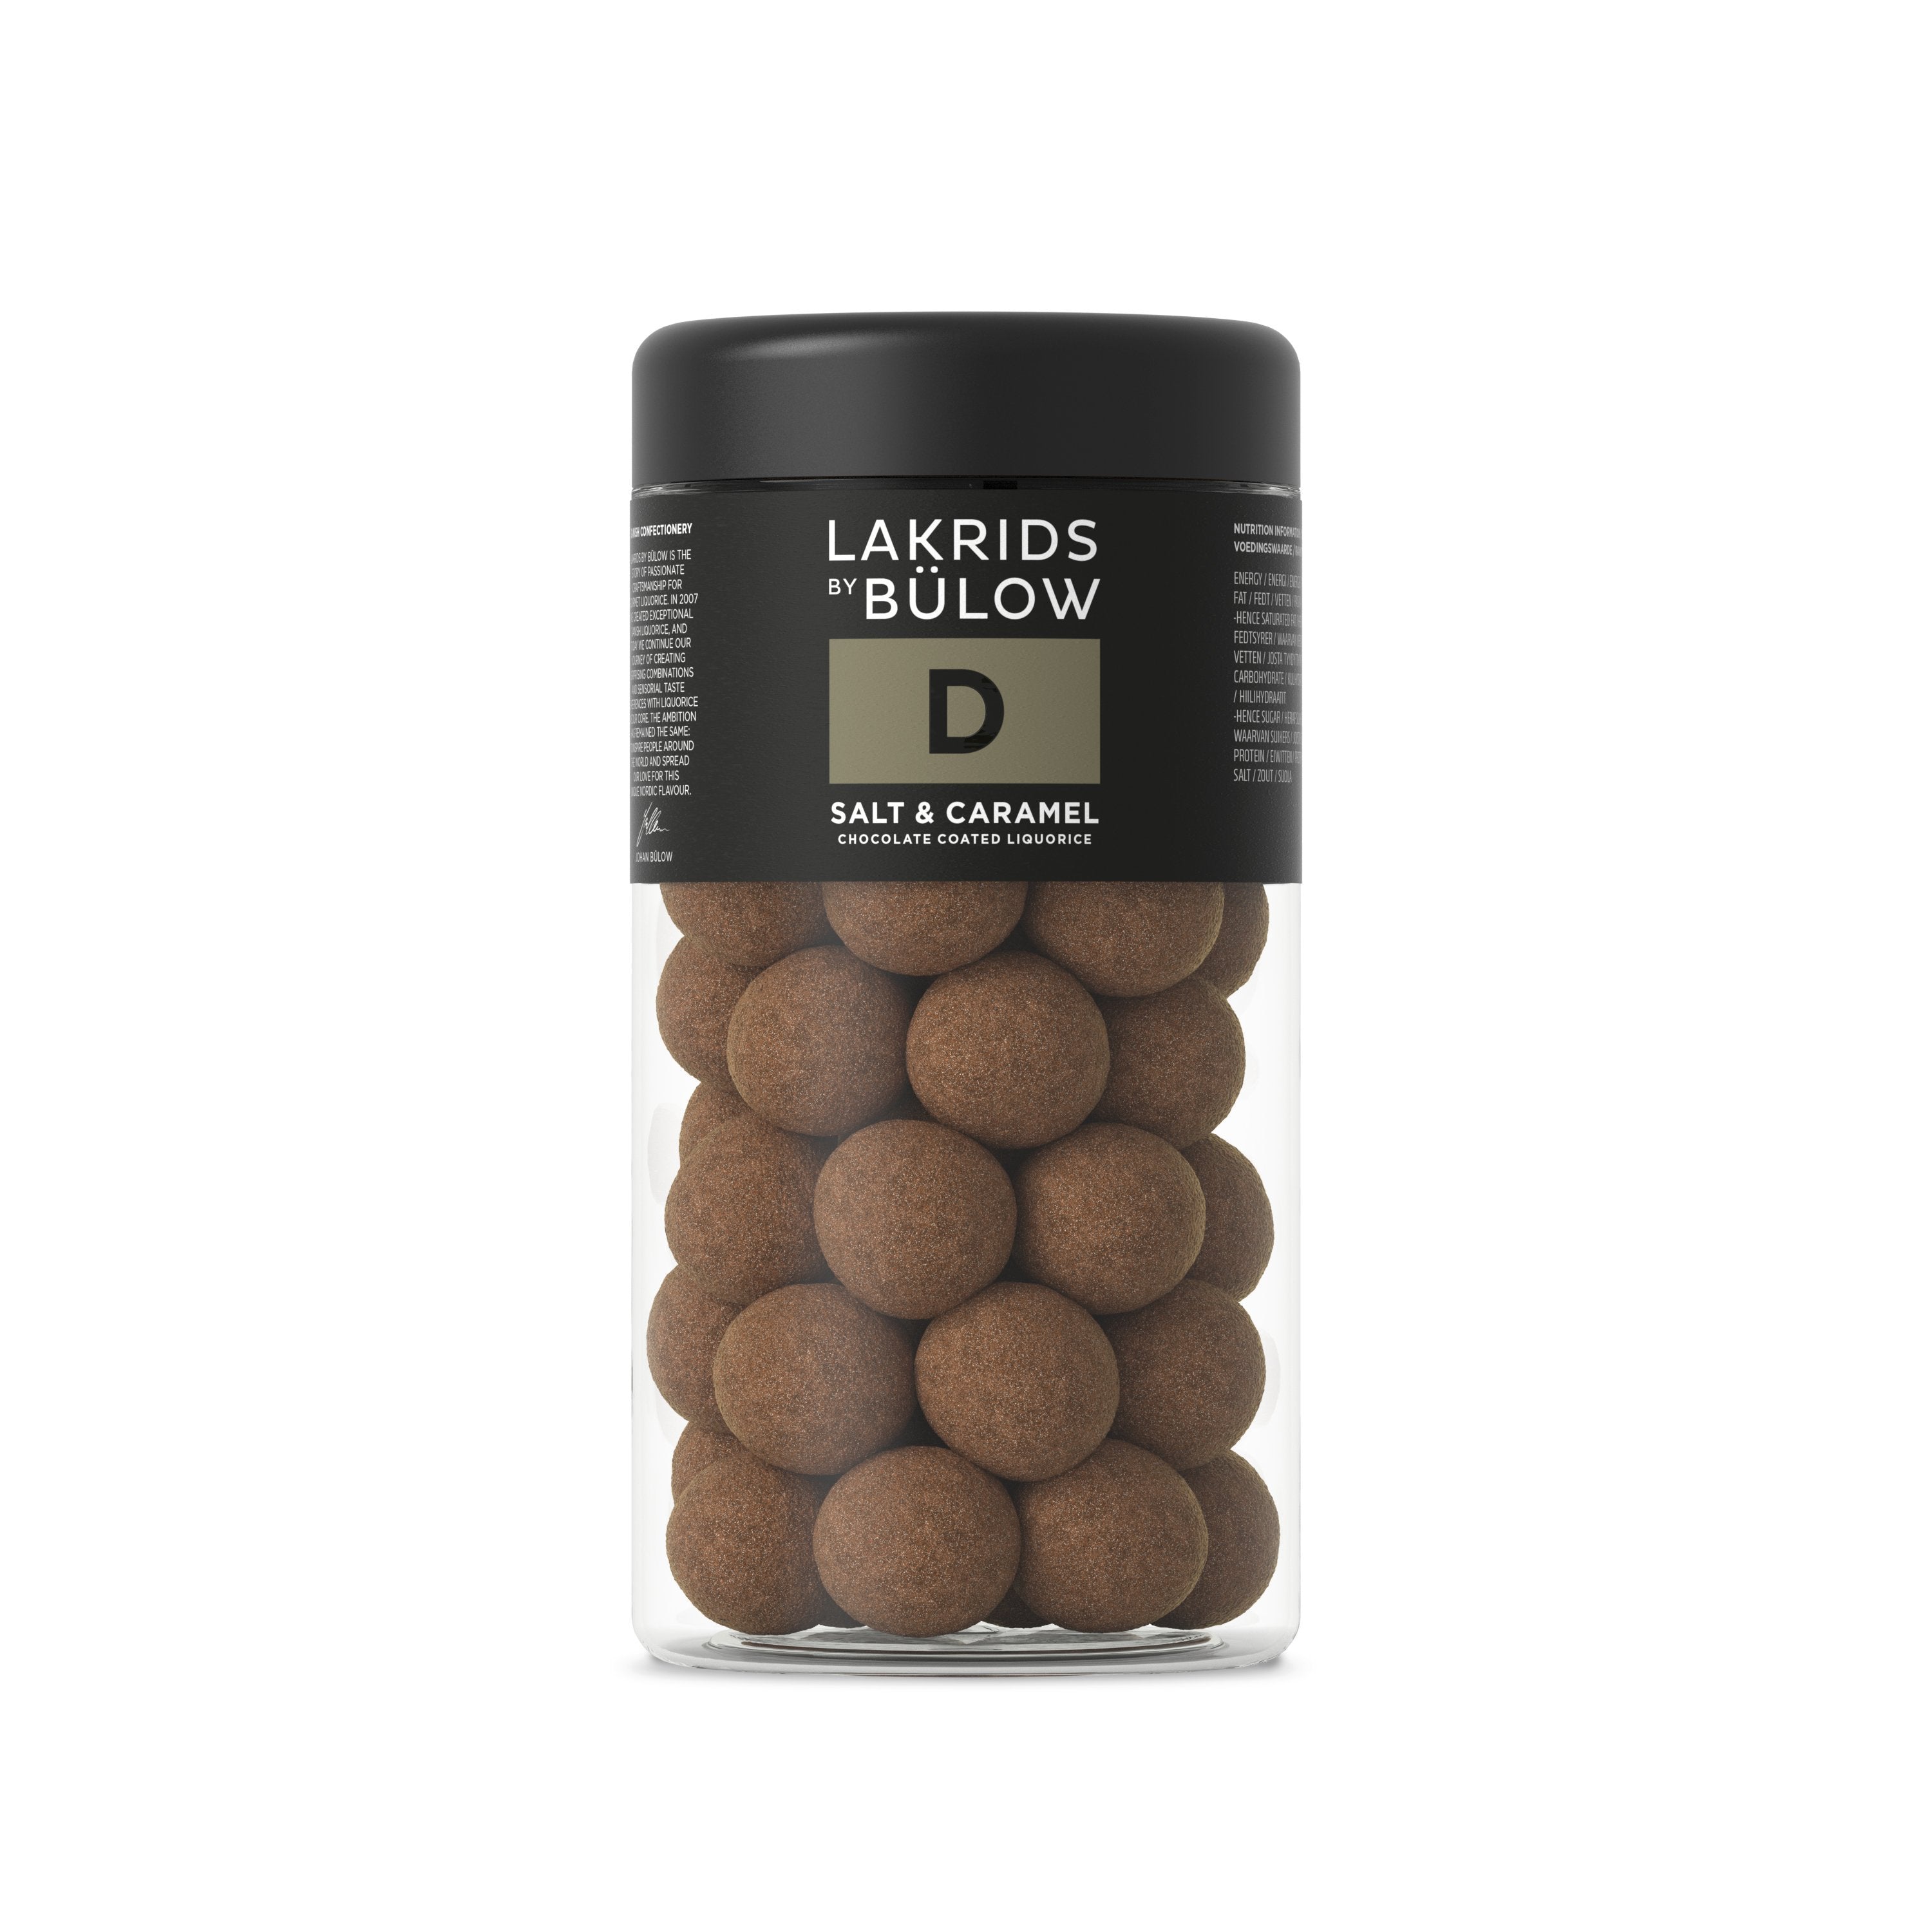 Lakrids By Bülow D Suola ja karamelli, 295 grammaa